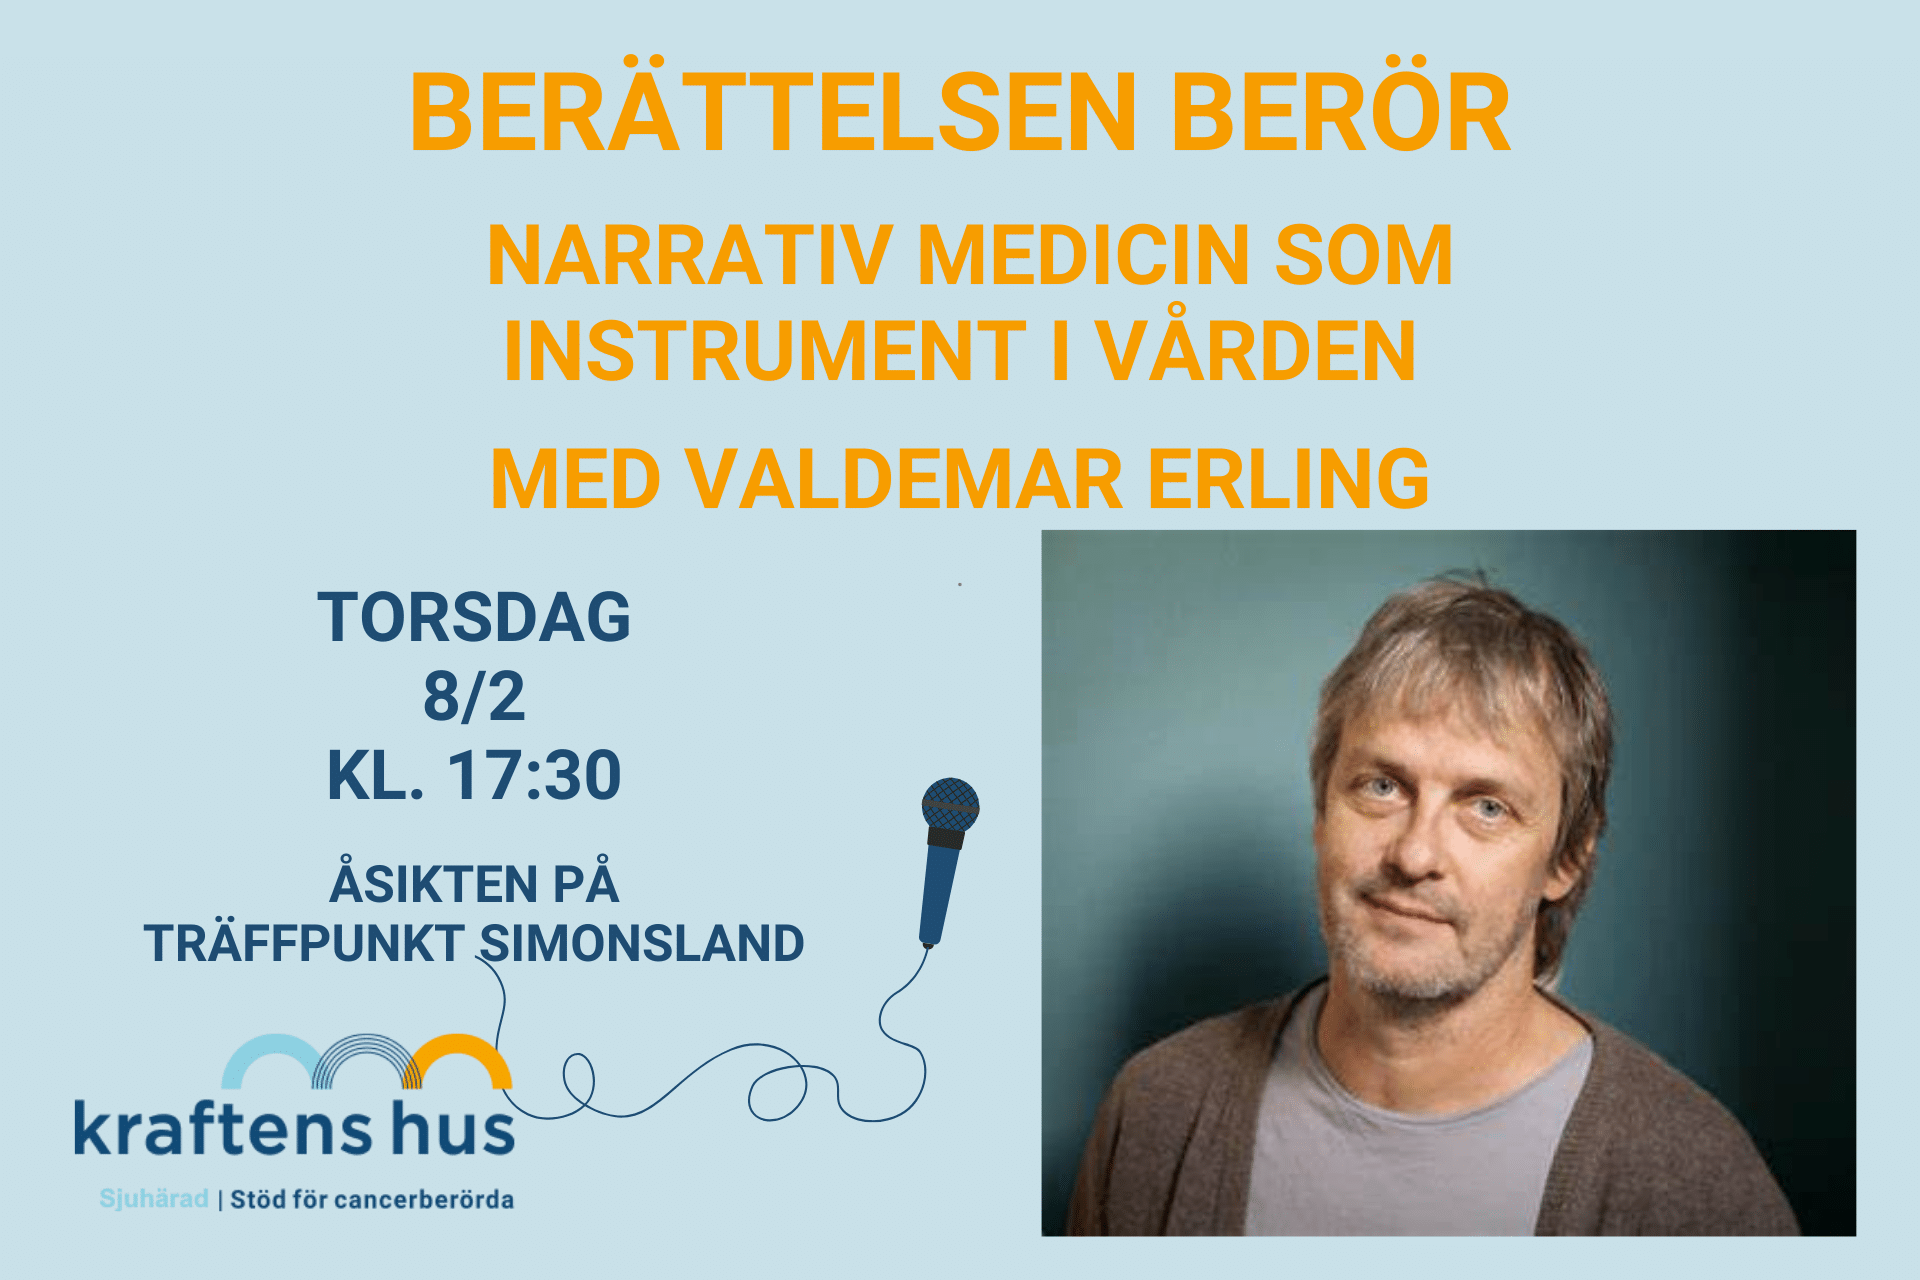 Föreläsningen Berättelsen berör - Narrativ medicin som instrument inom vården med Valdemar Erling